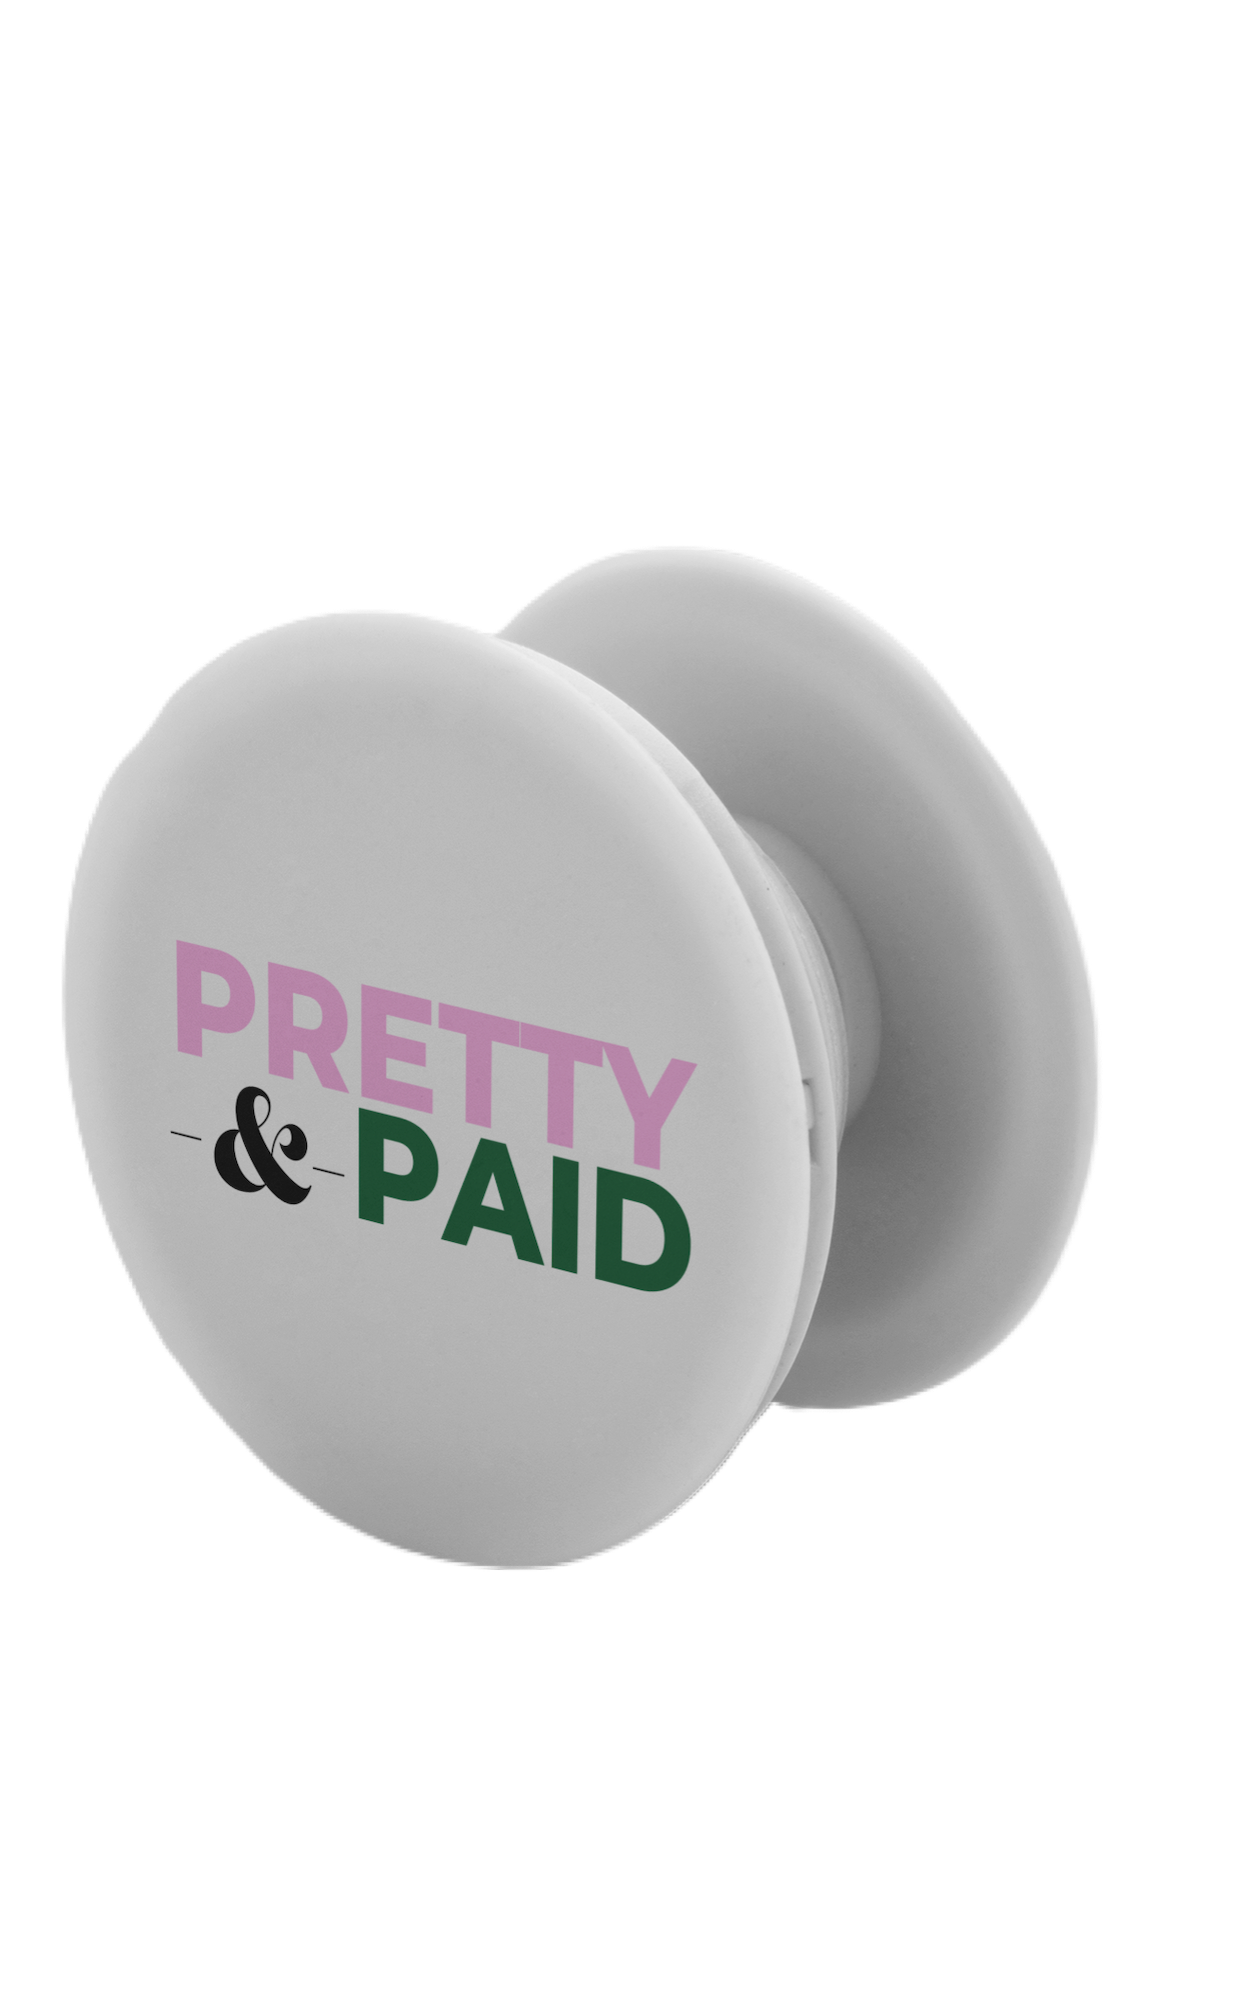 Pretty & Paid - TaylorTechShop LLC